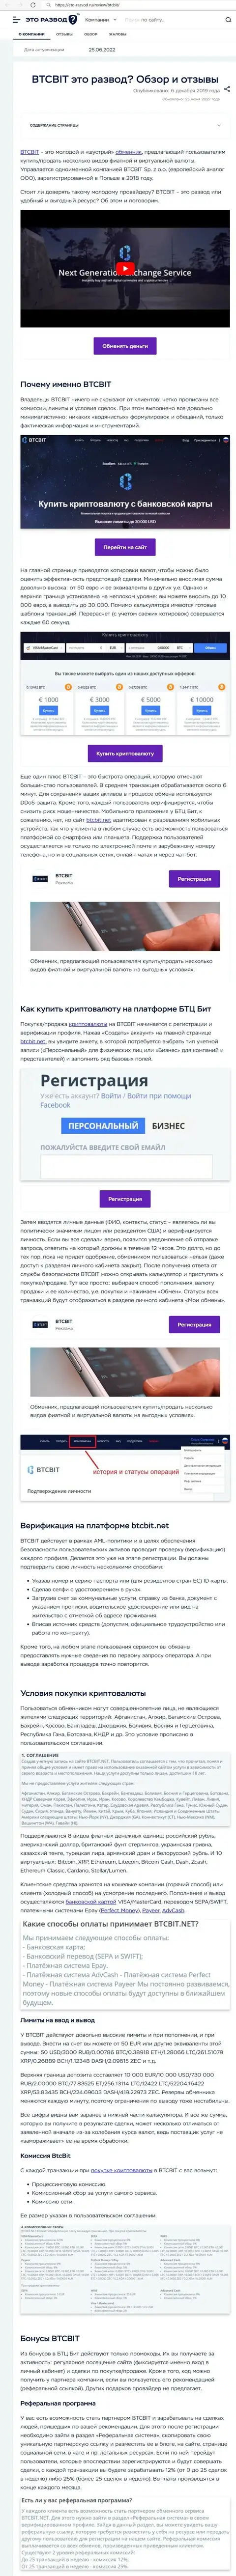 Анализ деятельности и условия сотрудничества организации BTCBit в материале на ресурсе eto-razvod ru